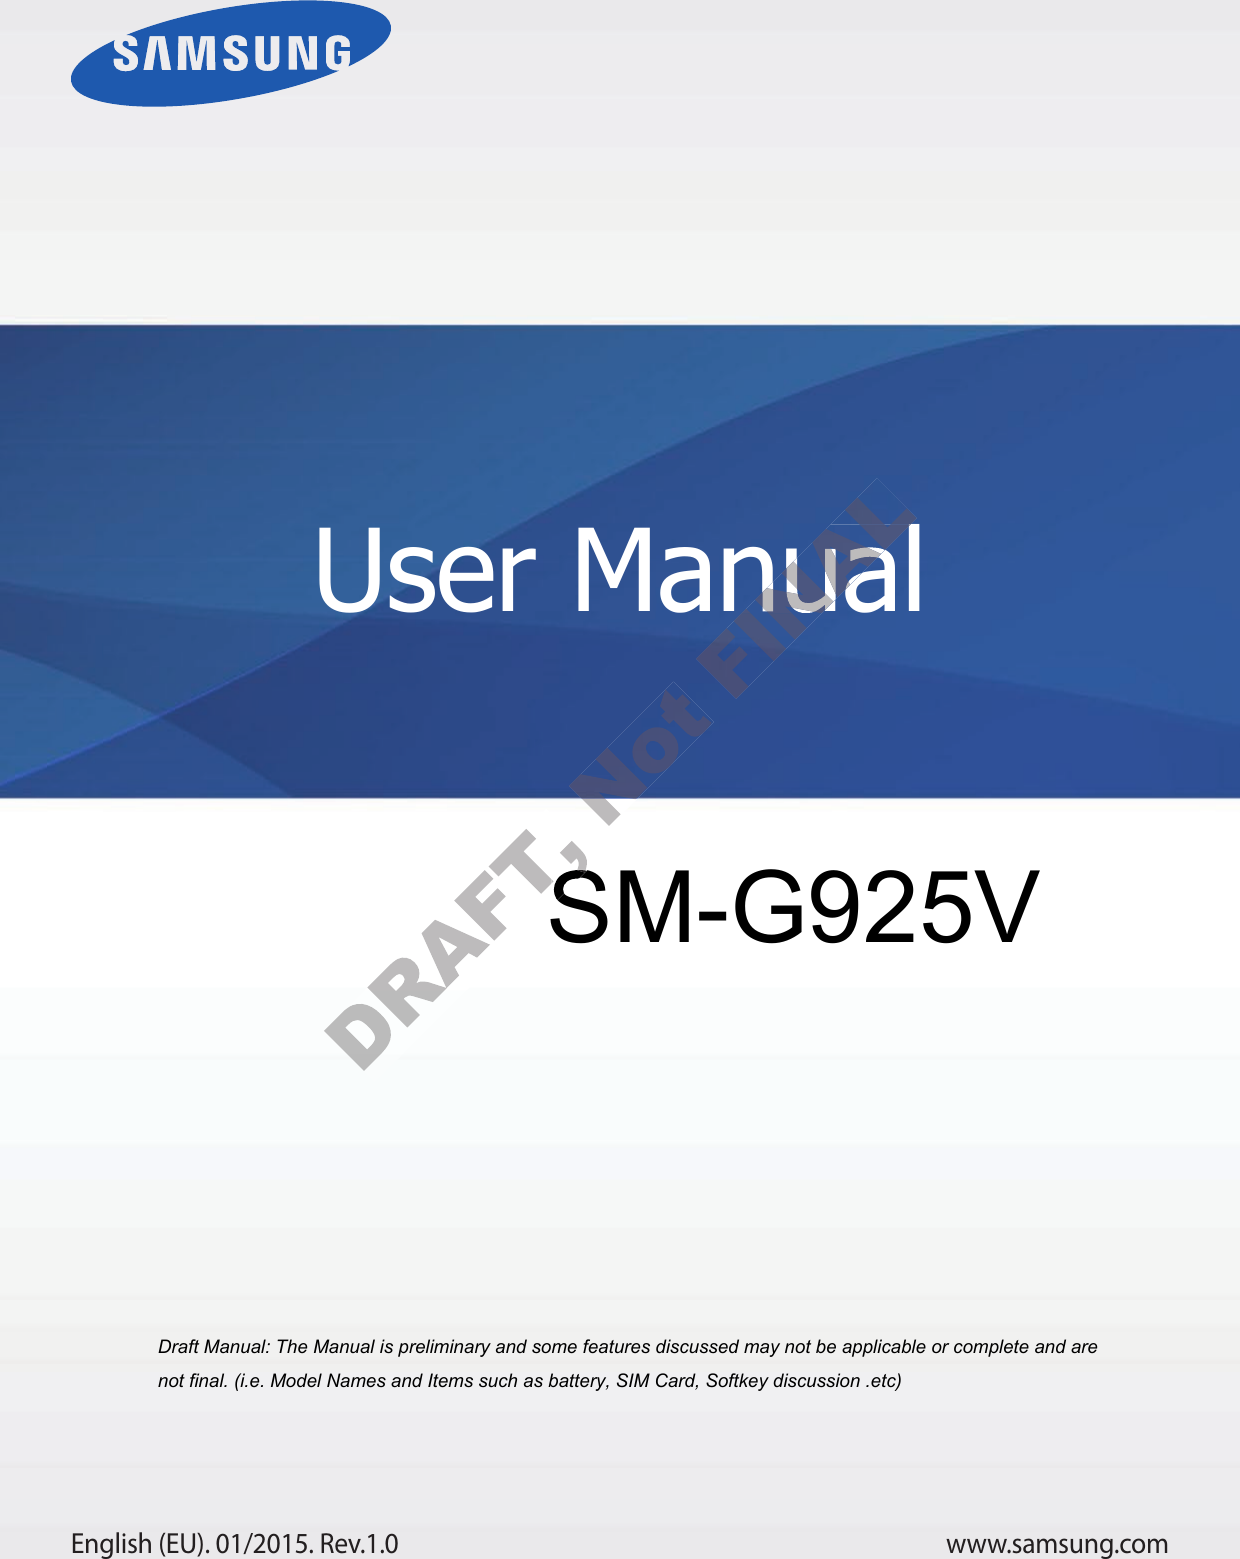 www.samsung.comUser ManualEnglish (EU). 01/2015. Rev.1.0a ana  ana  na and  a dd a n  aa   and a n na  d a and   a a  ad  dn SM-G925 User ManualUser Manual